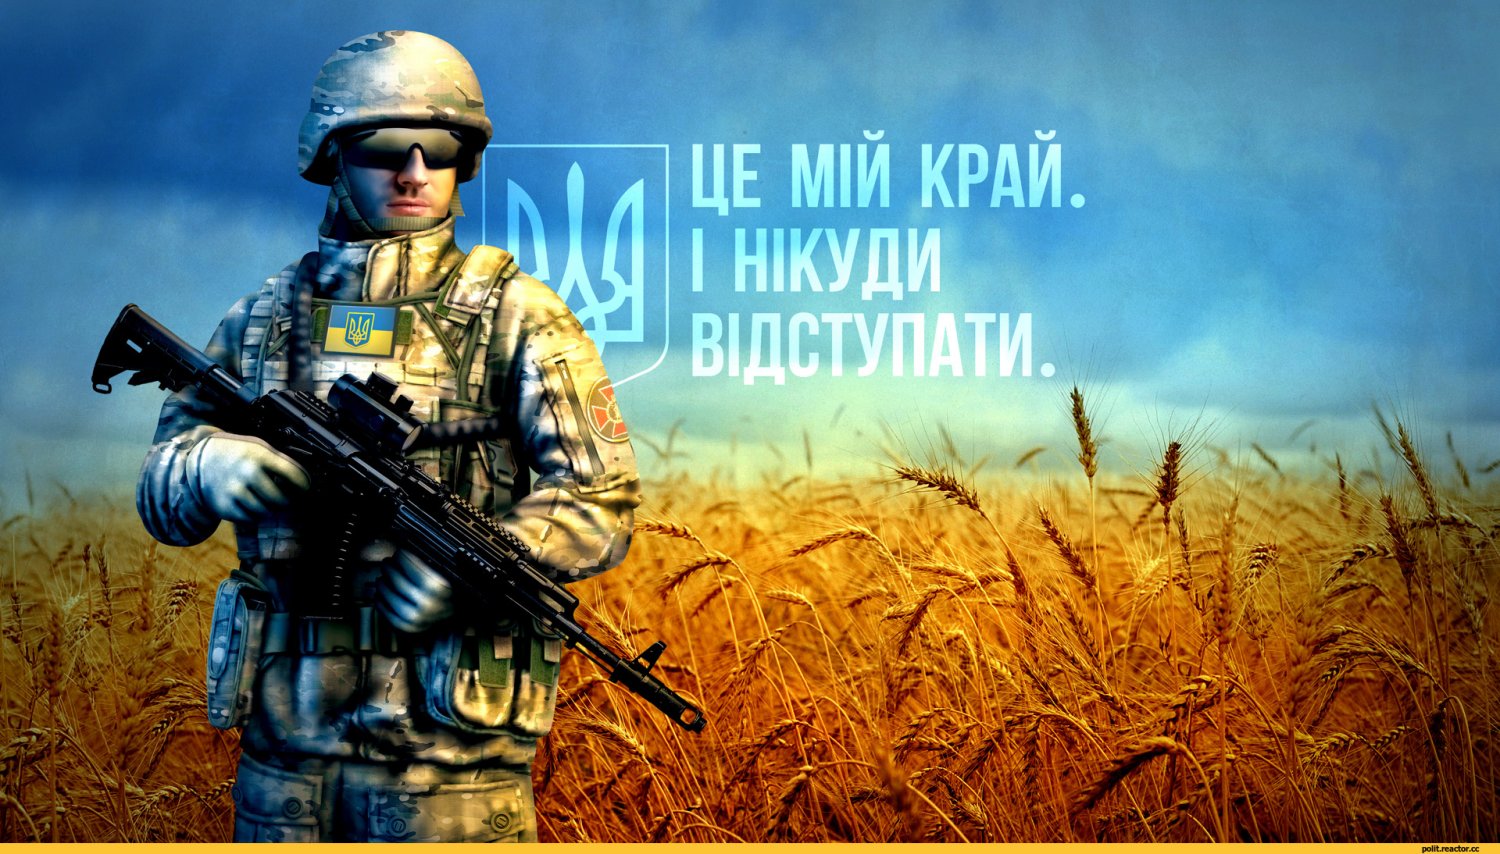 Подія дня: сьогодні 25-річчя Збройних сил України. Реакція перших осіб держави та політики